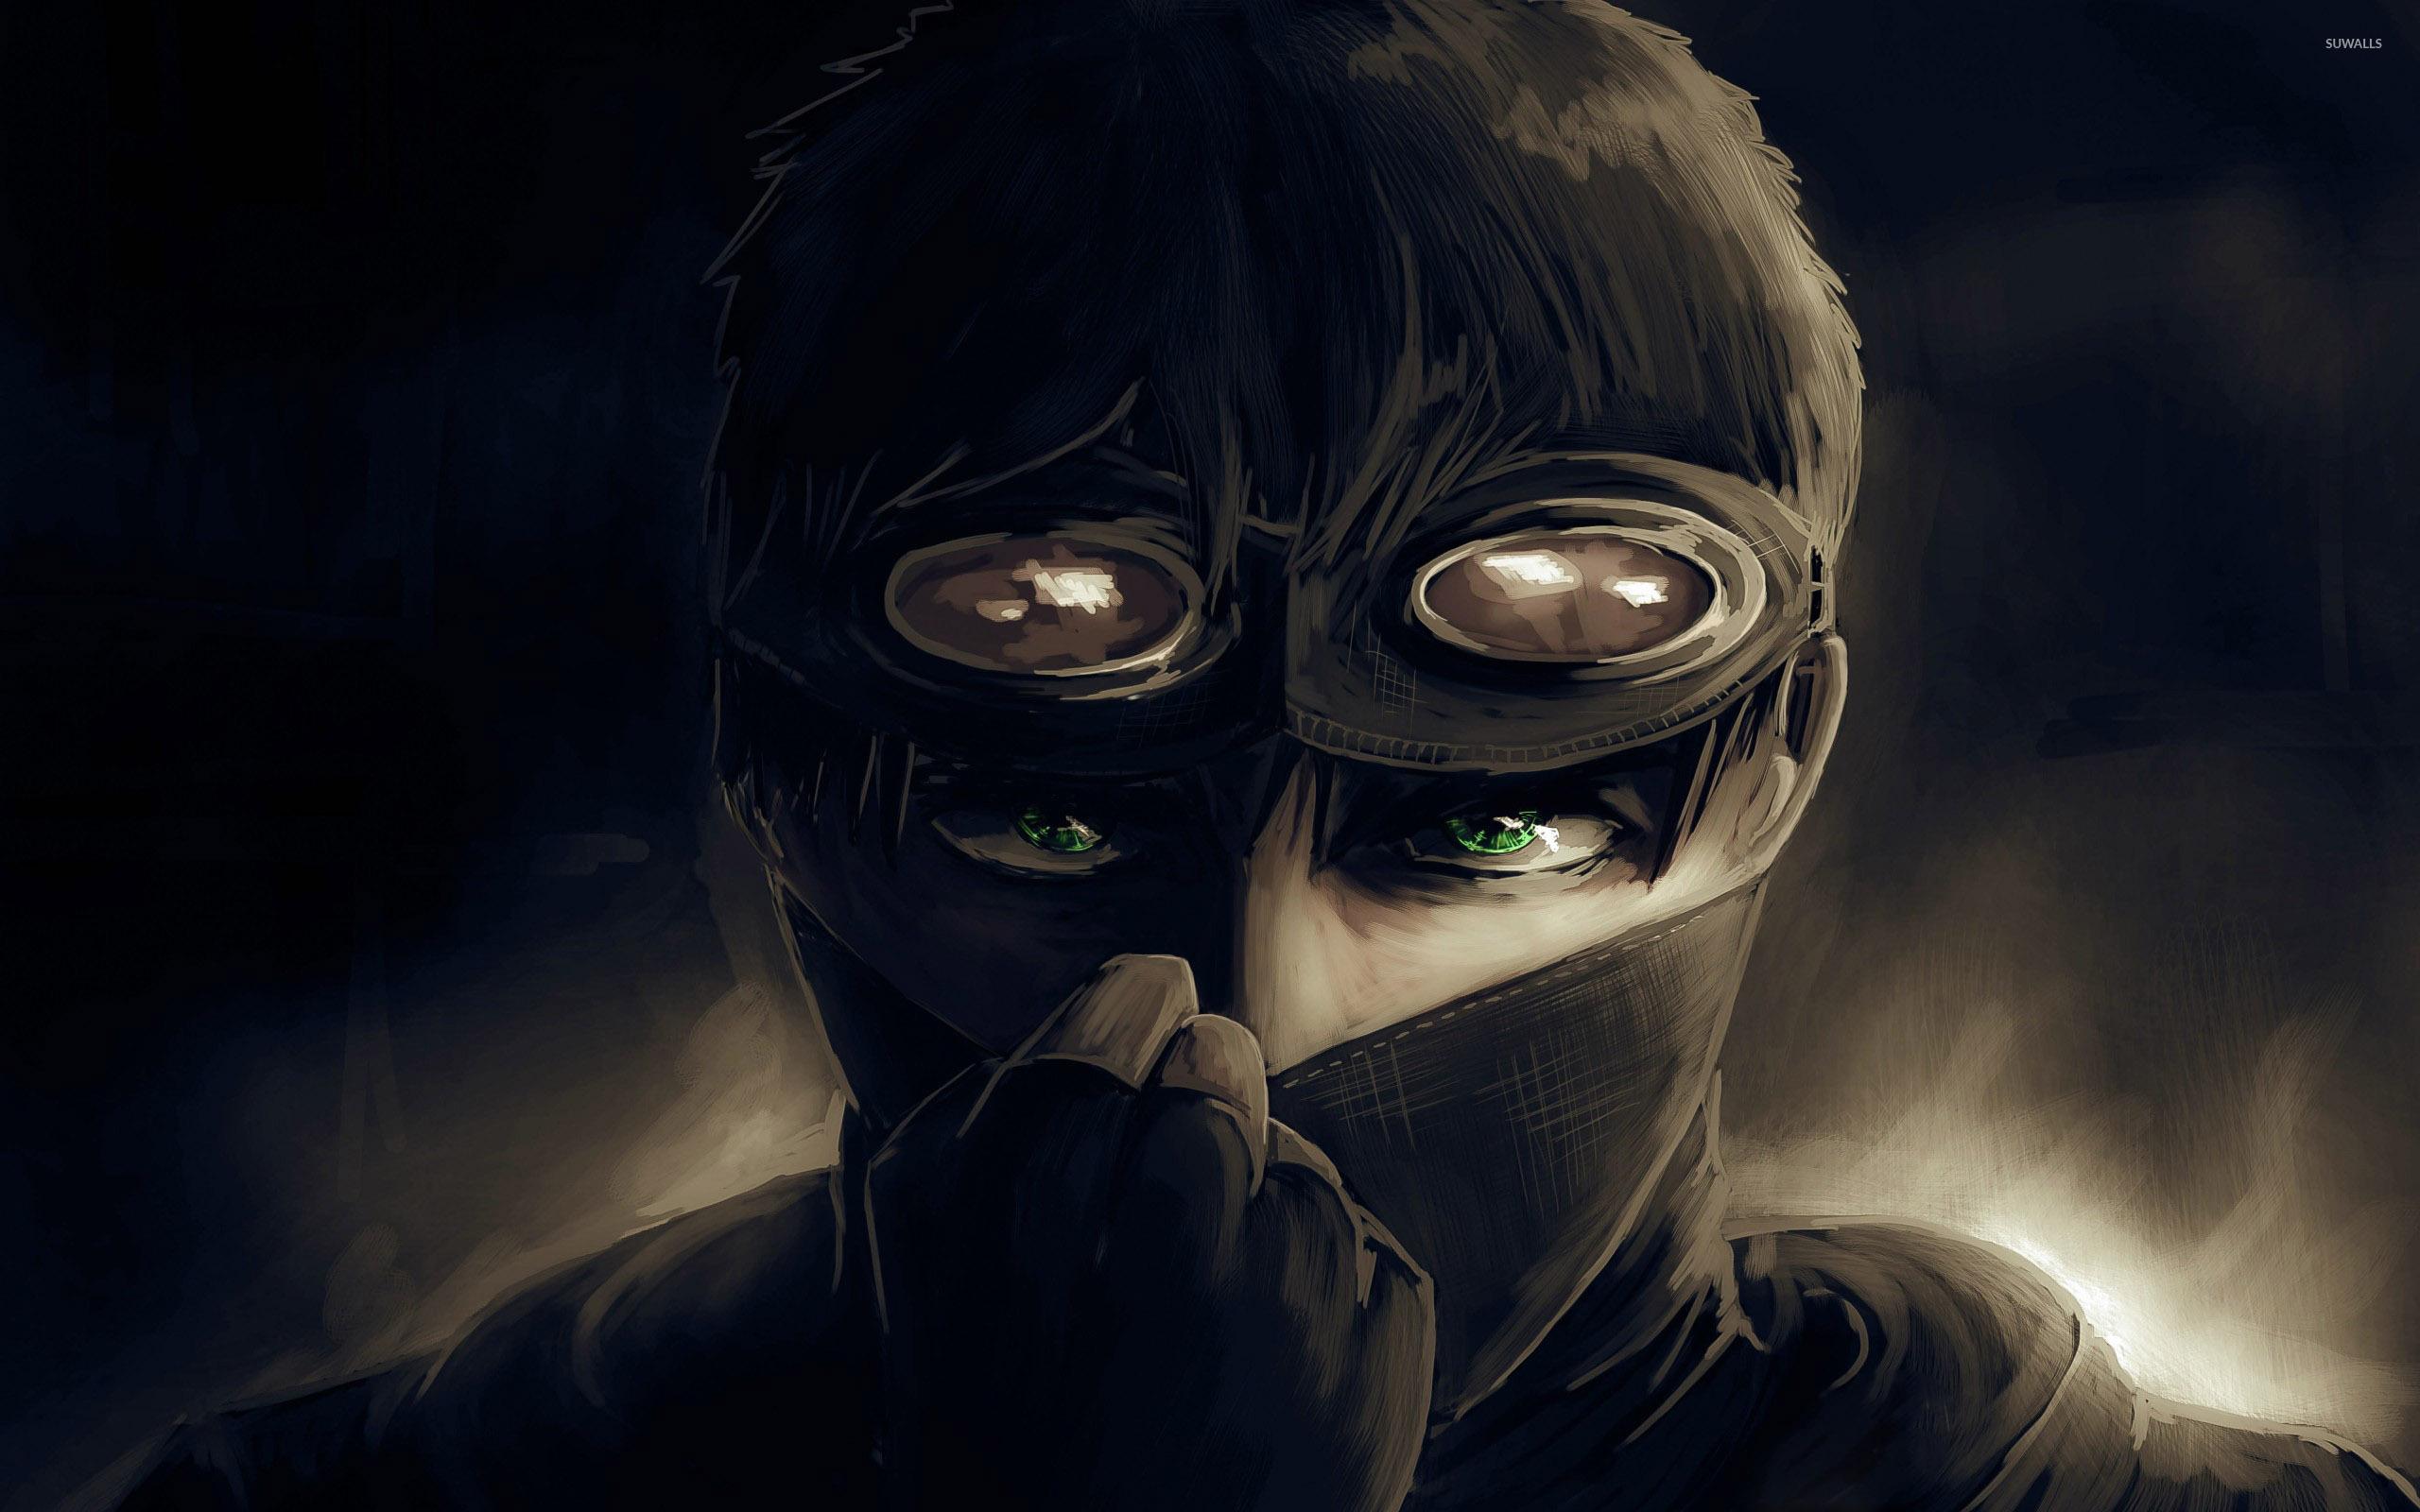 Green eyed man with mask wallpaper Art wallpaper